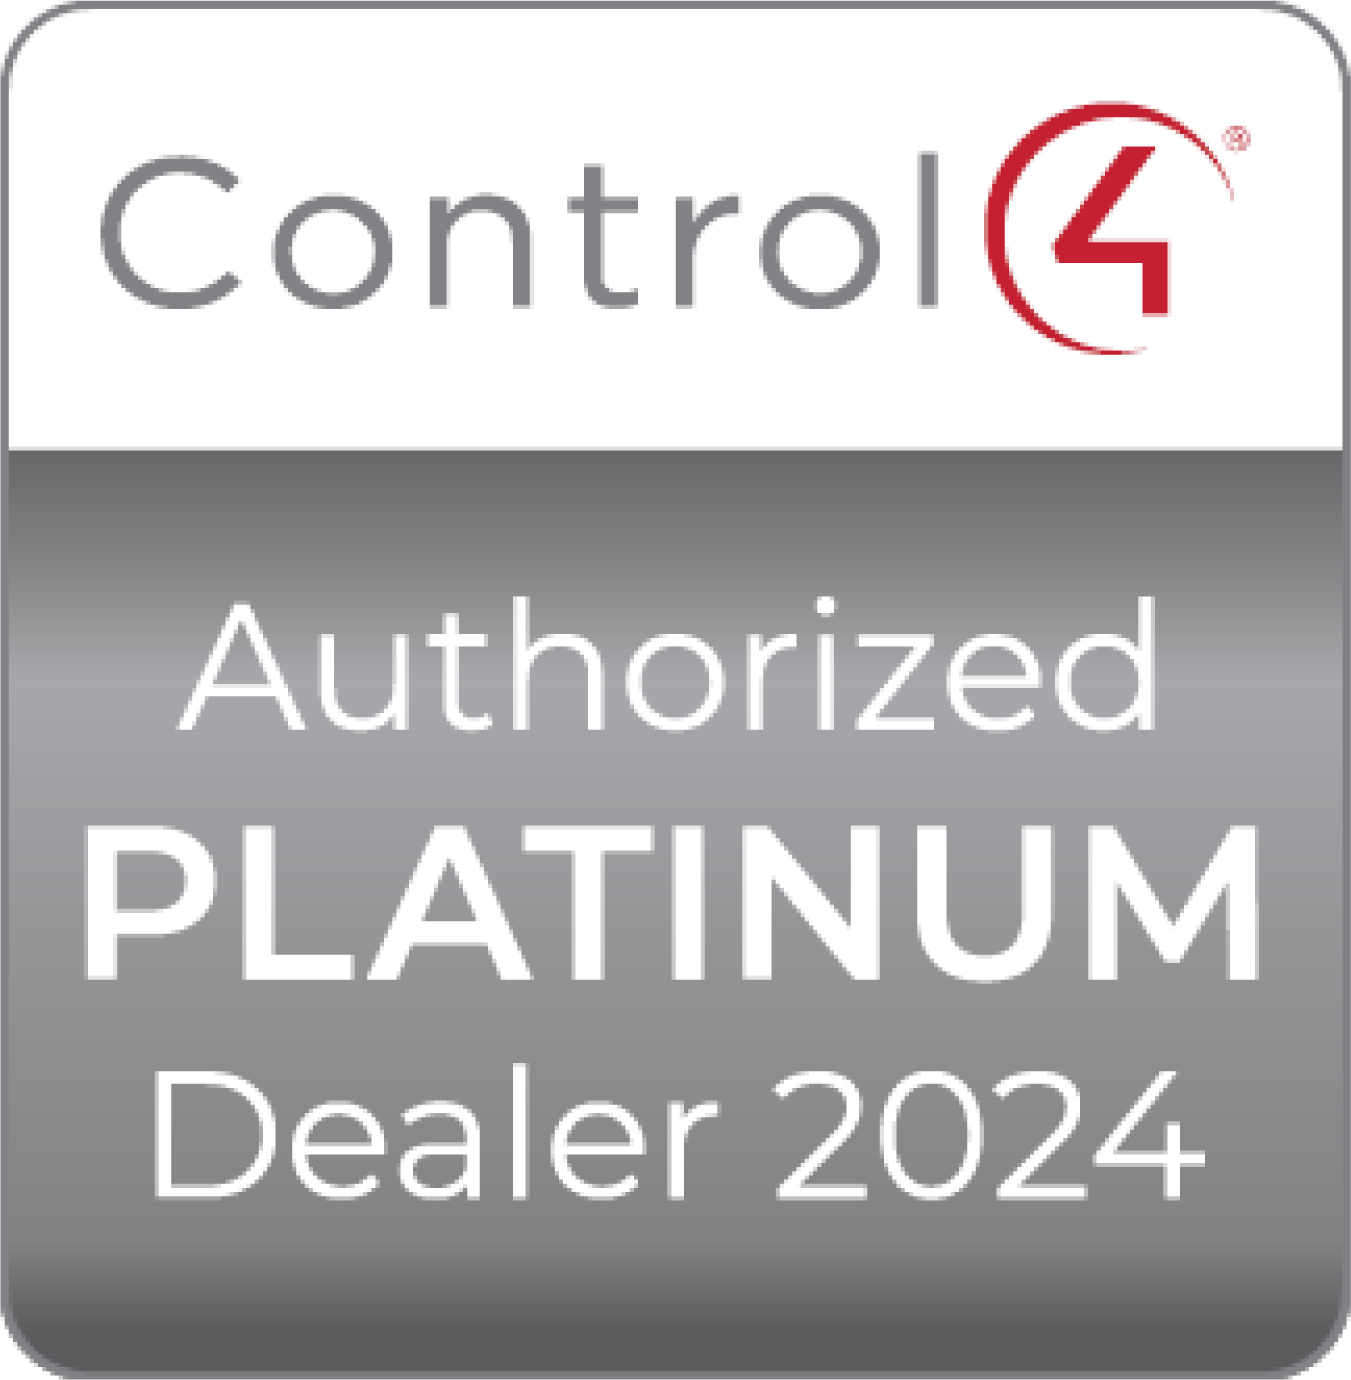 Control4 Platinum 2024